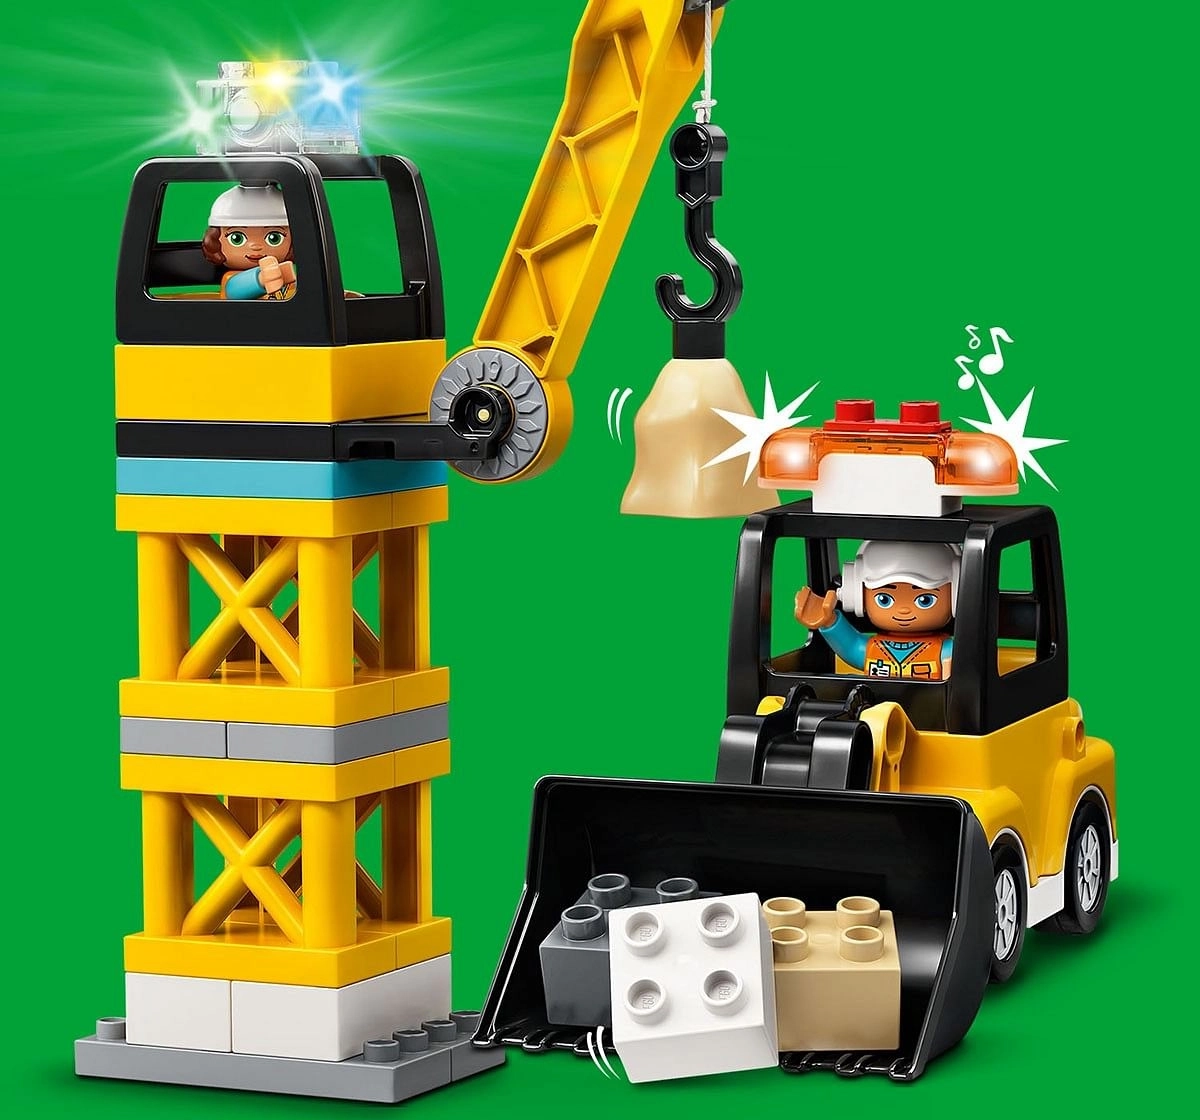 Lego Tower Crane And Construction V29,  2Y+, (Multicolor)